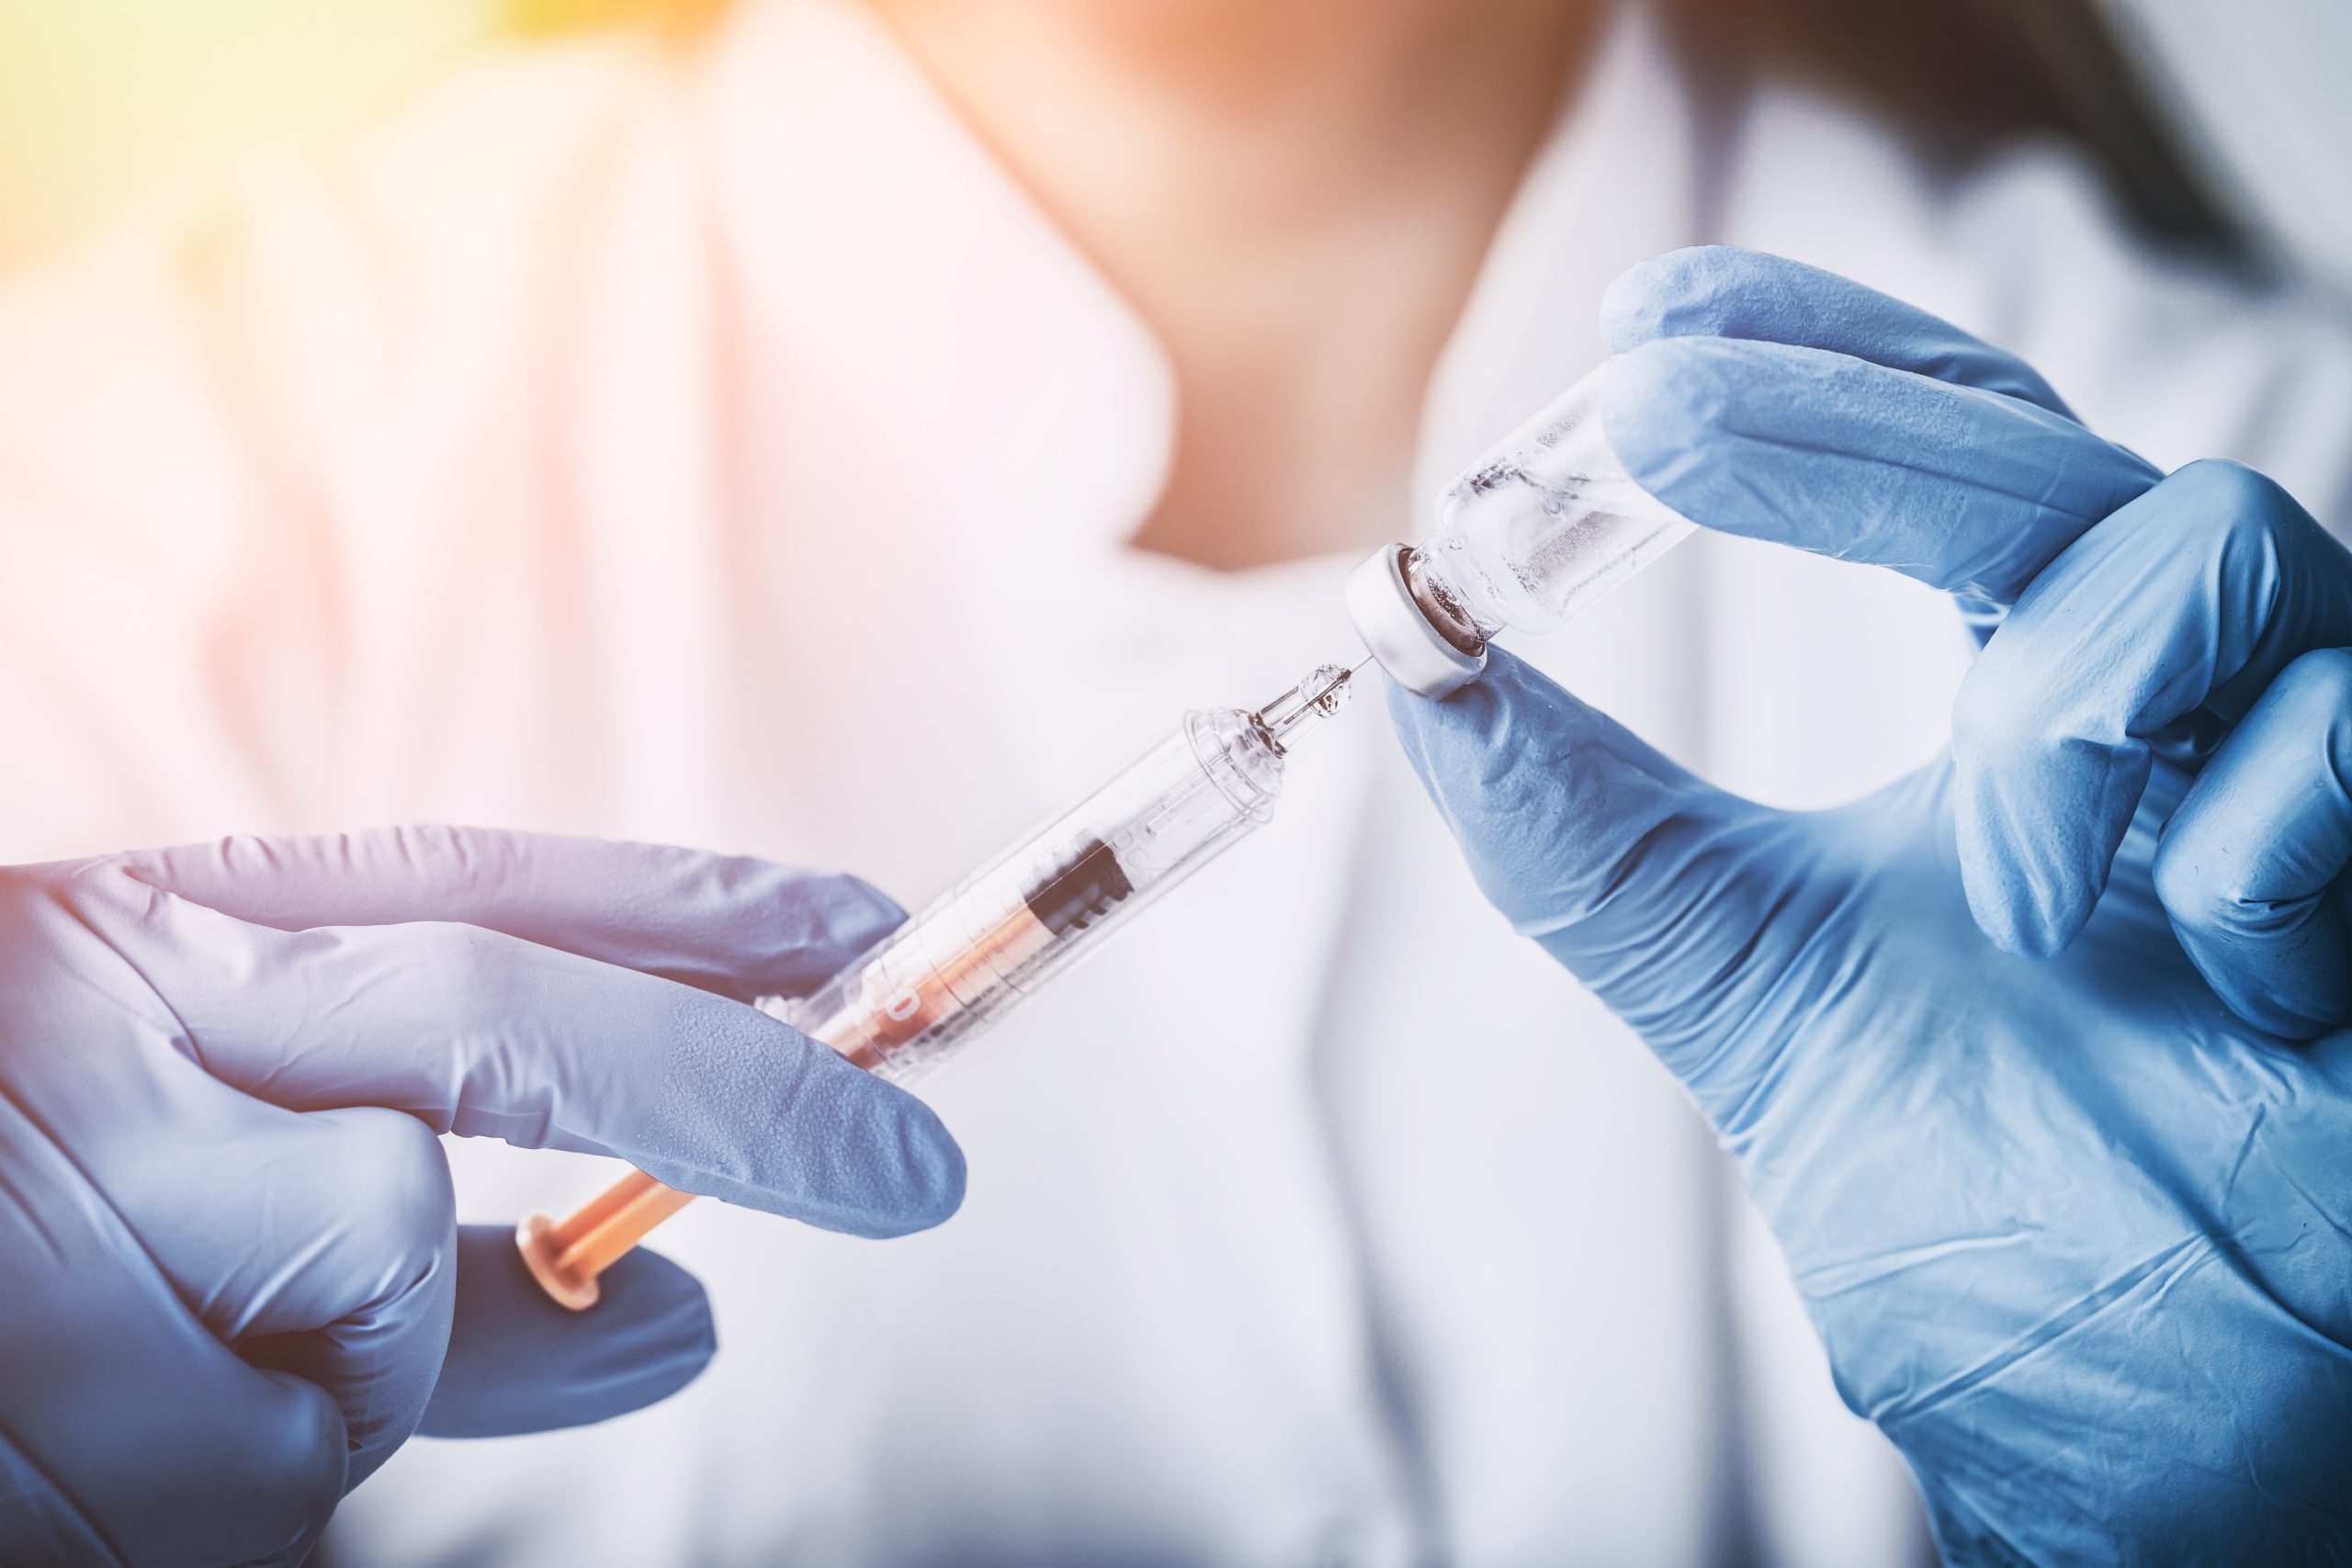 DGS quer alargar vacinação pneumocócica gratuita a mais doentes de risco